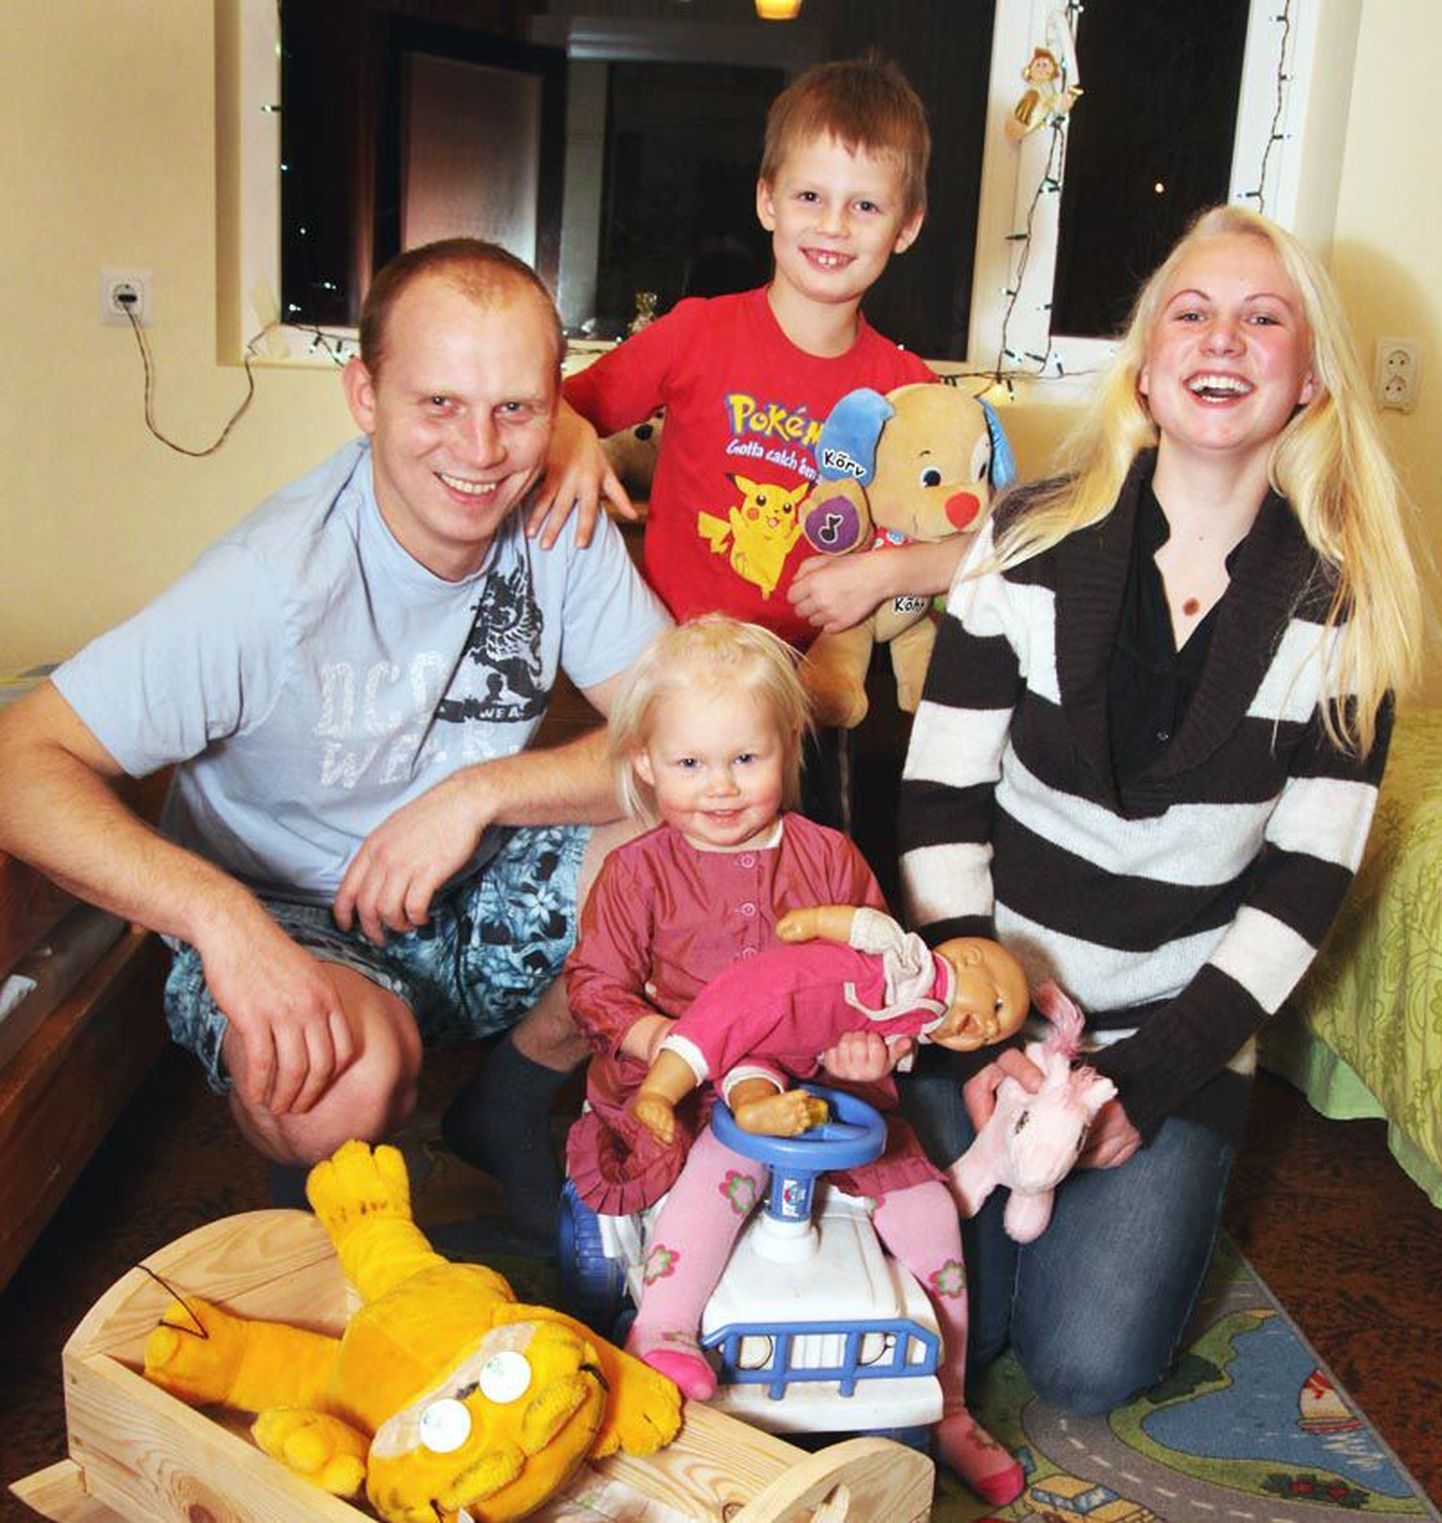 Pärnulane Olav Karulin sai pärast kohtuskäiku õiguse võtta poeg enda juurde elama.  Nüüd on tal uus kaasa ja õnnelikus peres kasvab ka tütar.